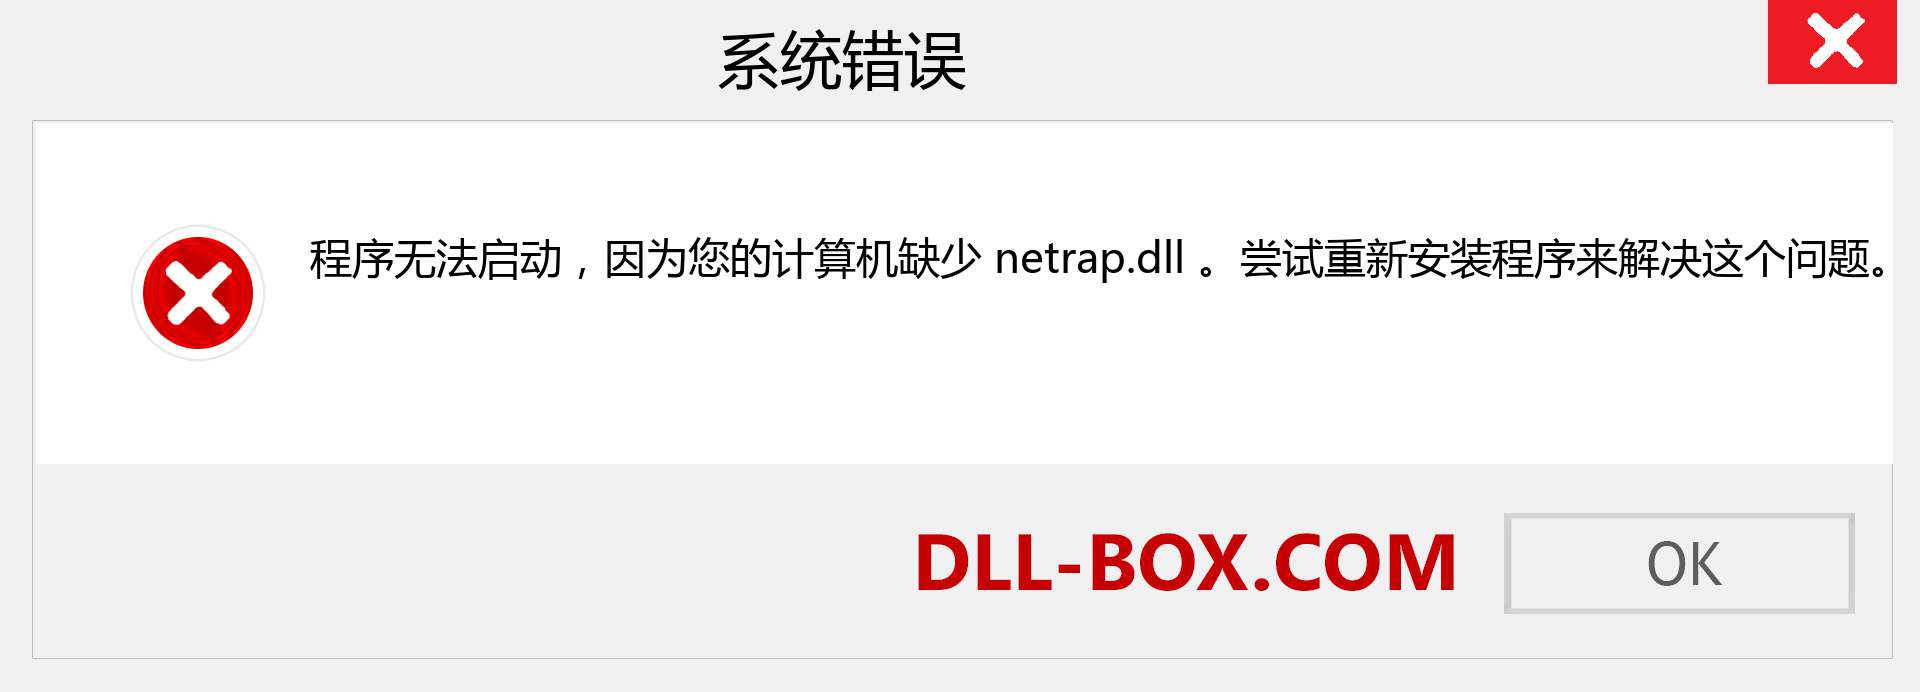 netrap.dll 文件丢失？。 适用于 Windows 7、8、10 的下载 - 修复 Windows、照片、图像上的 netrap dll 丢失错误